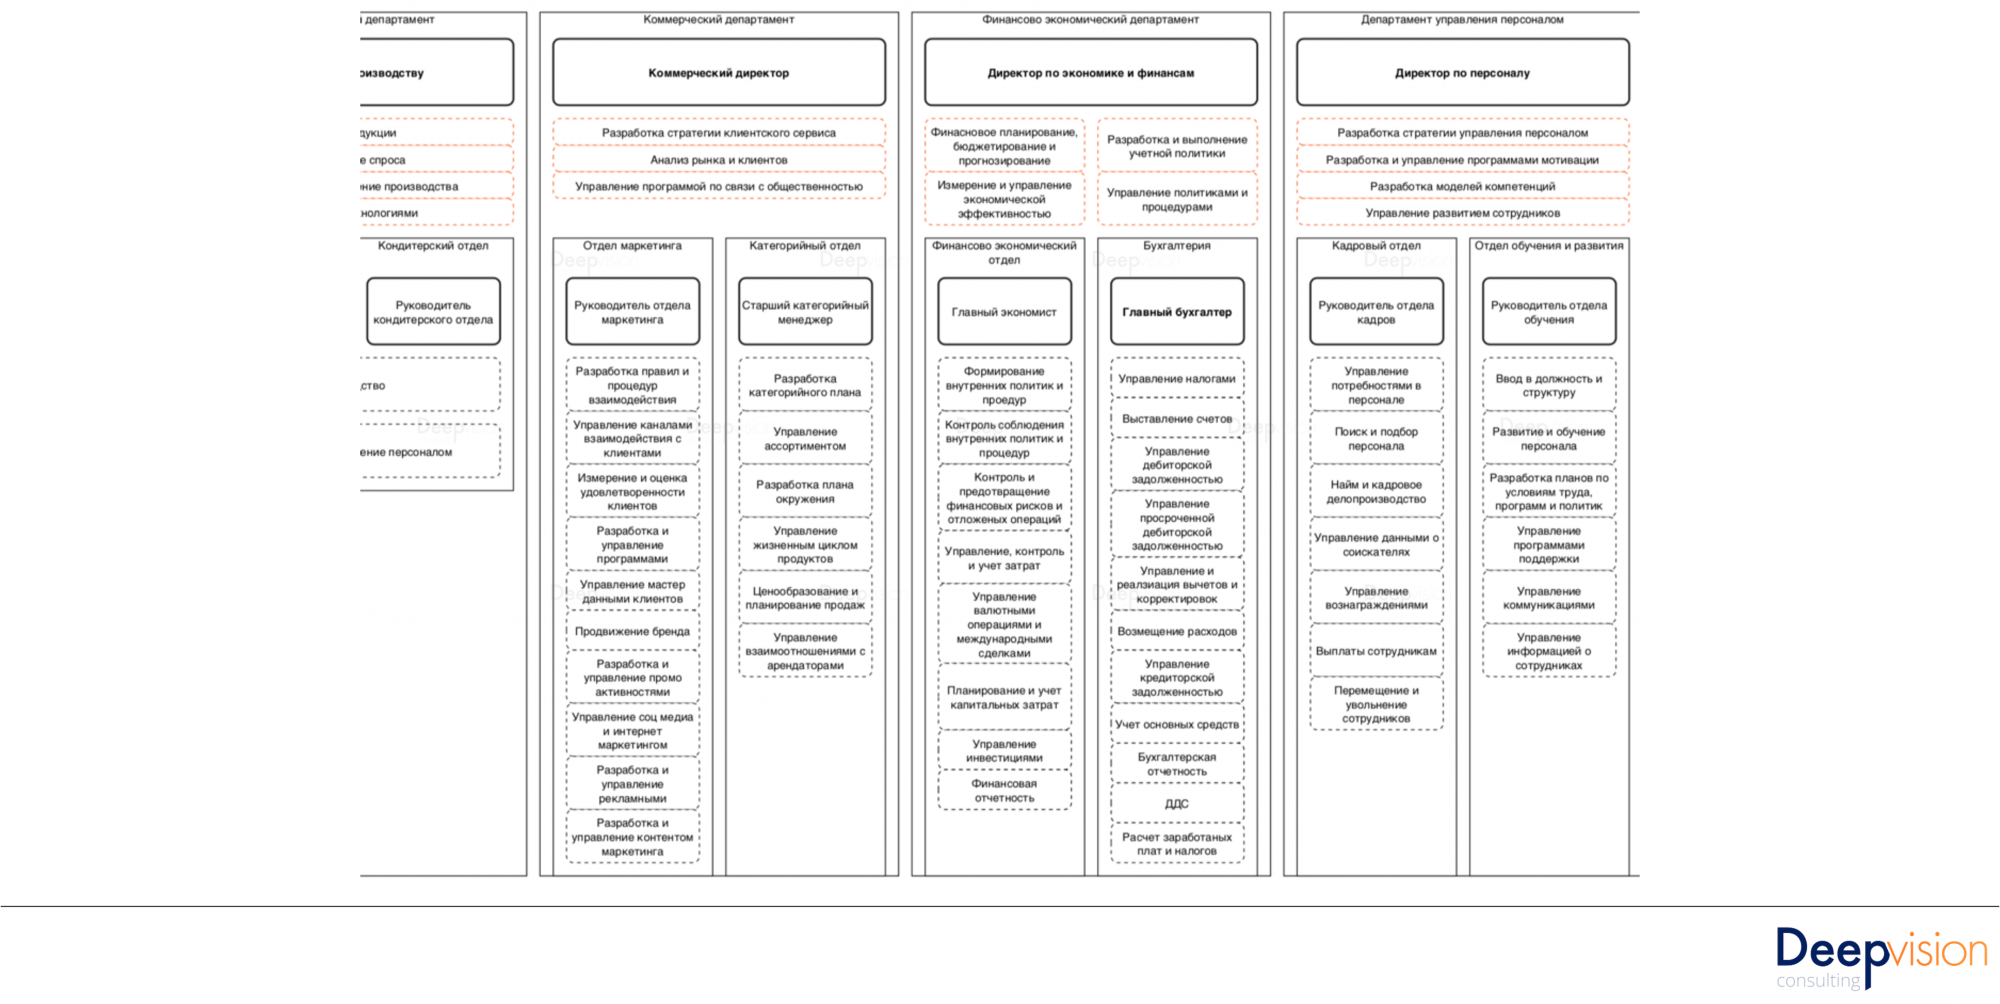 Реорганизация бизнес процессов - инструкция по применению Процессно ориентированная организационная структура.png